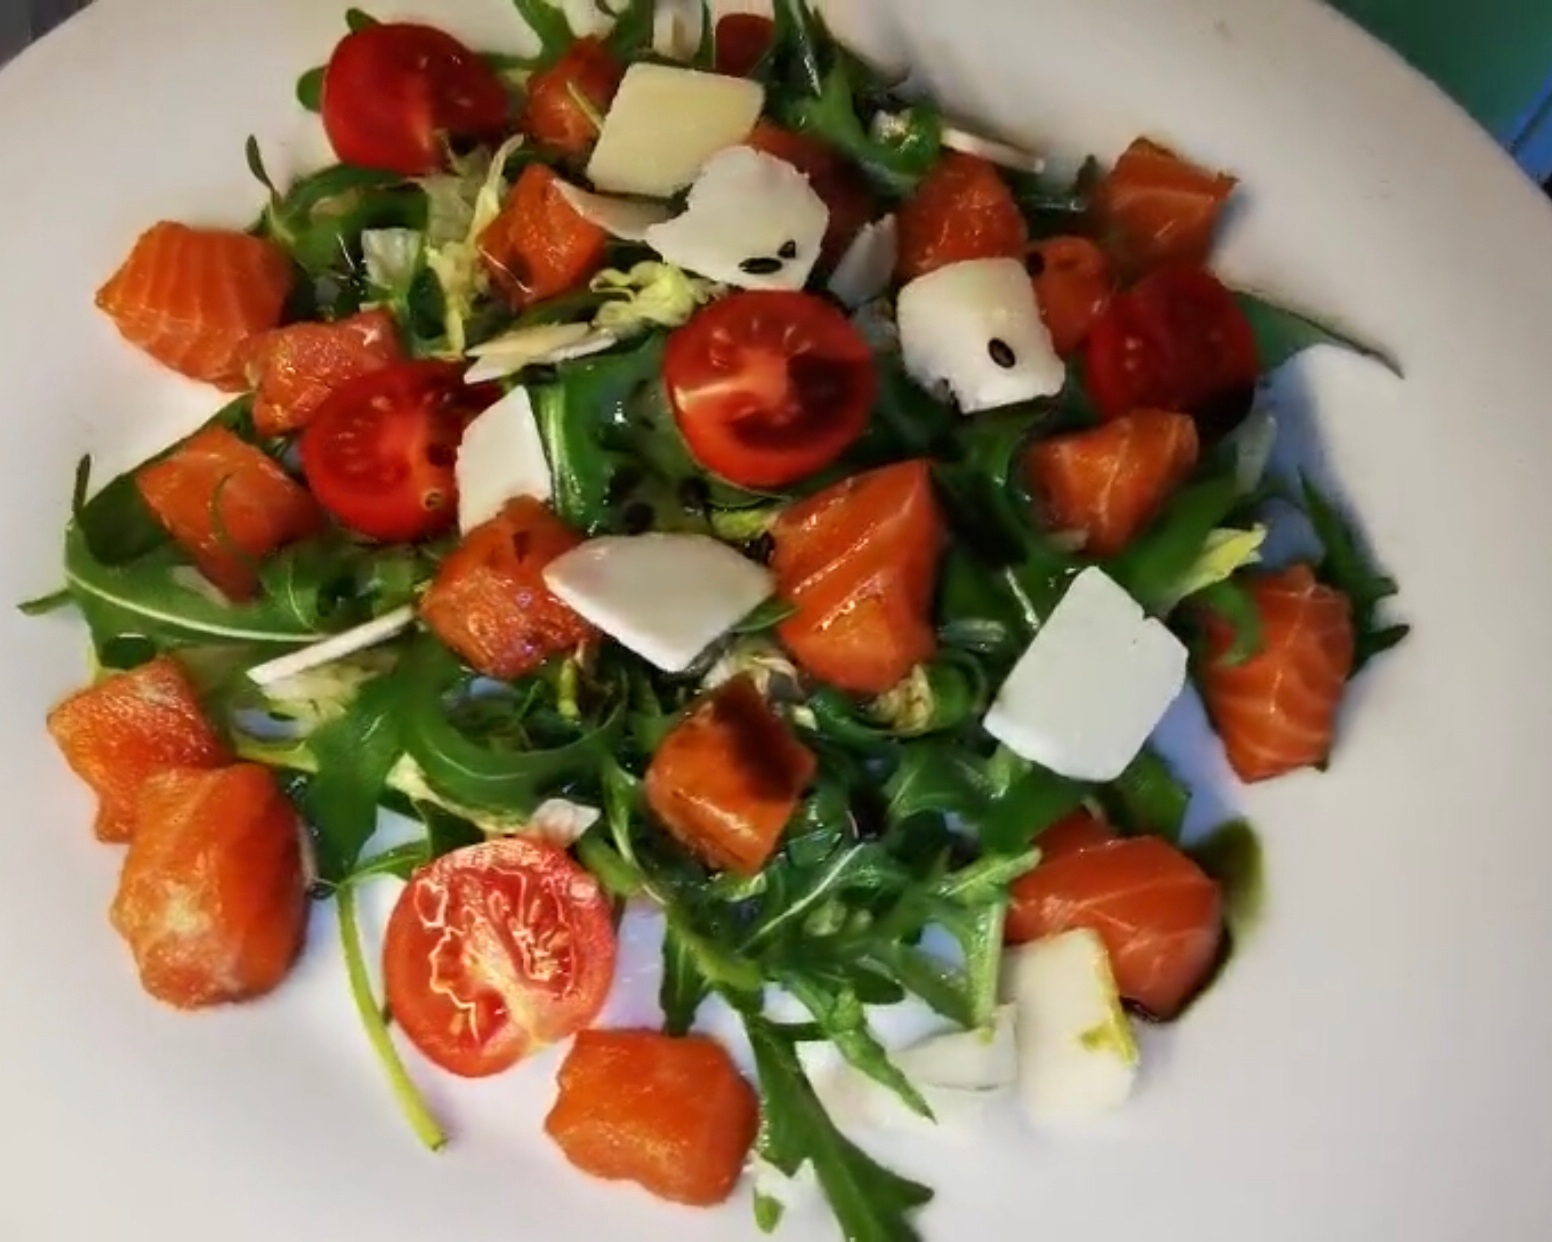 那些餐厅的轻食沙拉在家也能做--营养美味的挪威三文鱼芝麻菜沙拉